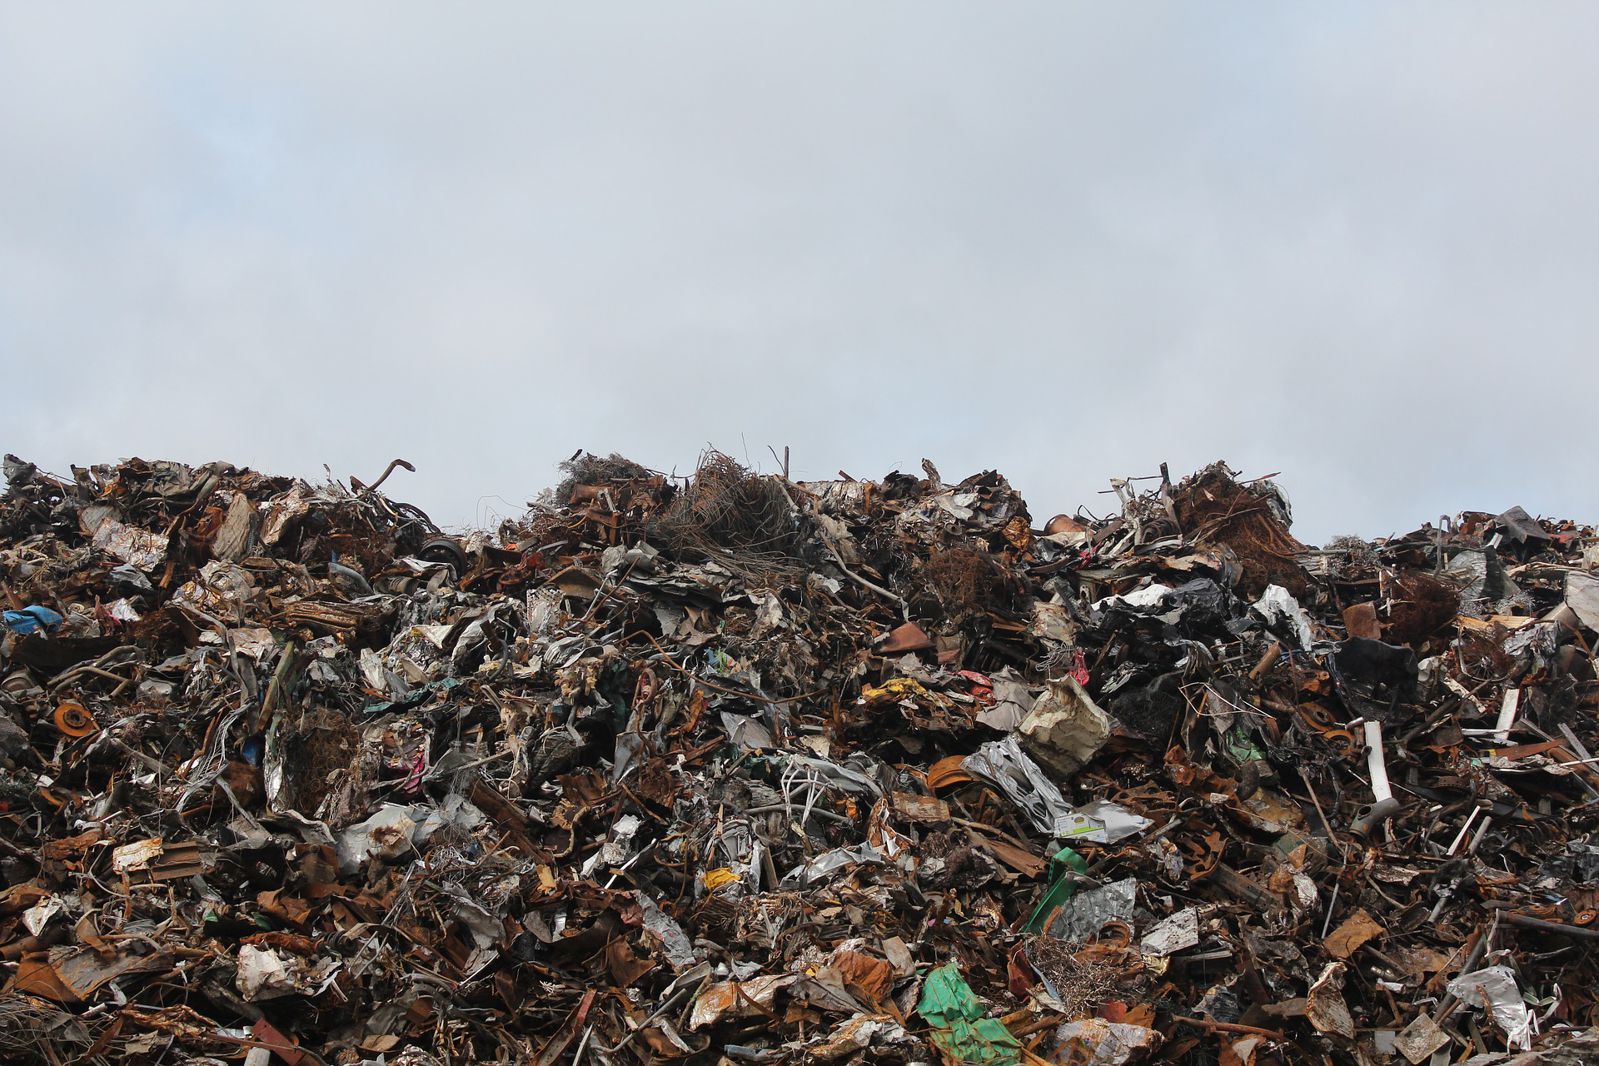 В документации к аукциону на вывоз мусора в Пермском крае в семь раз превышены объемы вывозимого мусора